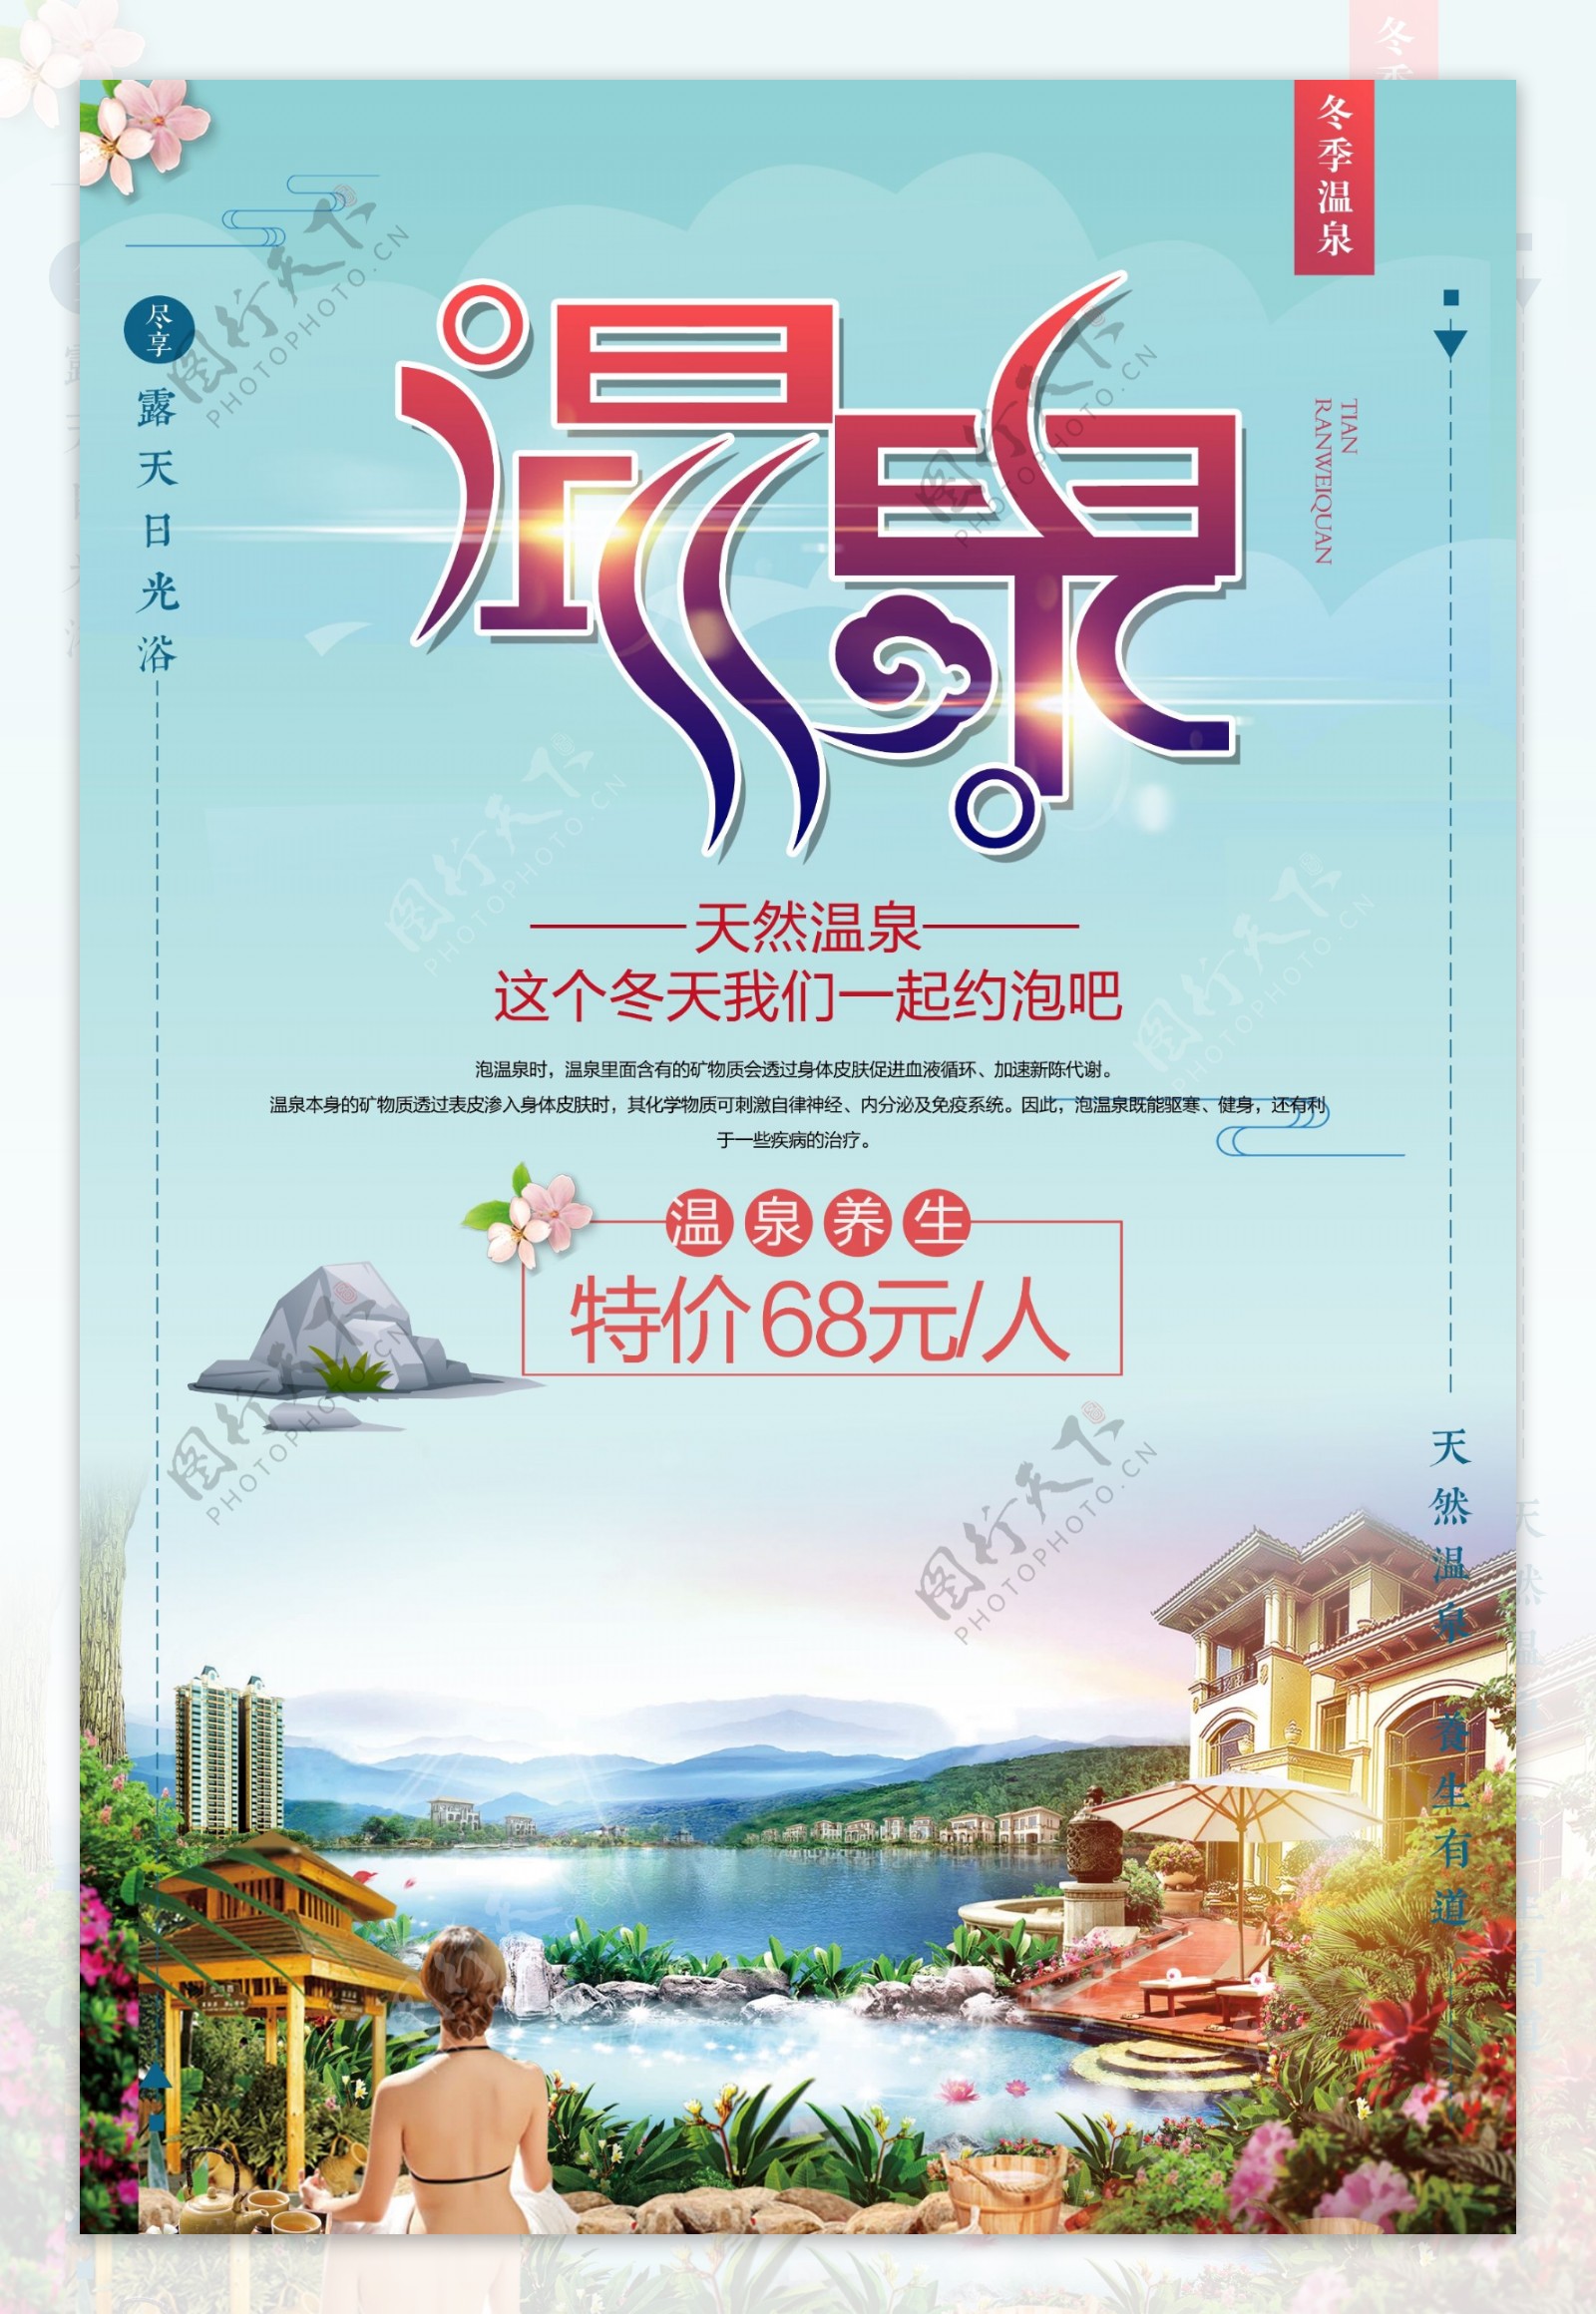 2017年创意冬季旅游泡温泉渡假宣传海报